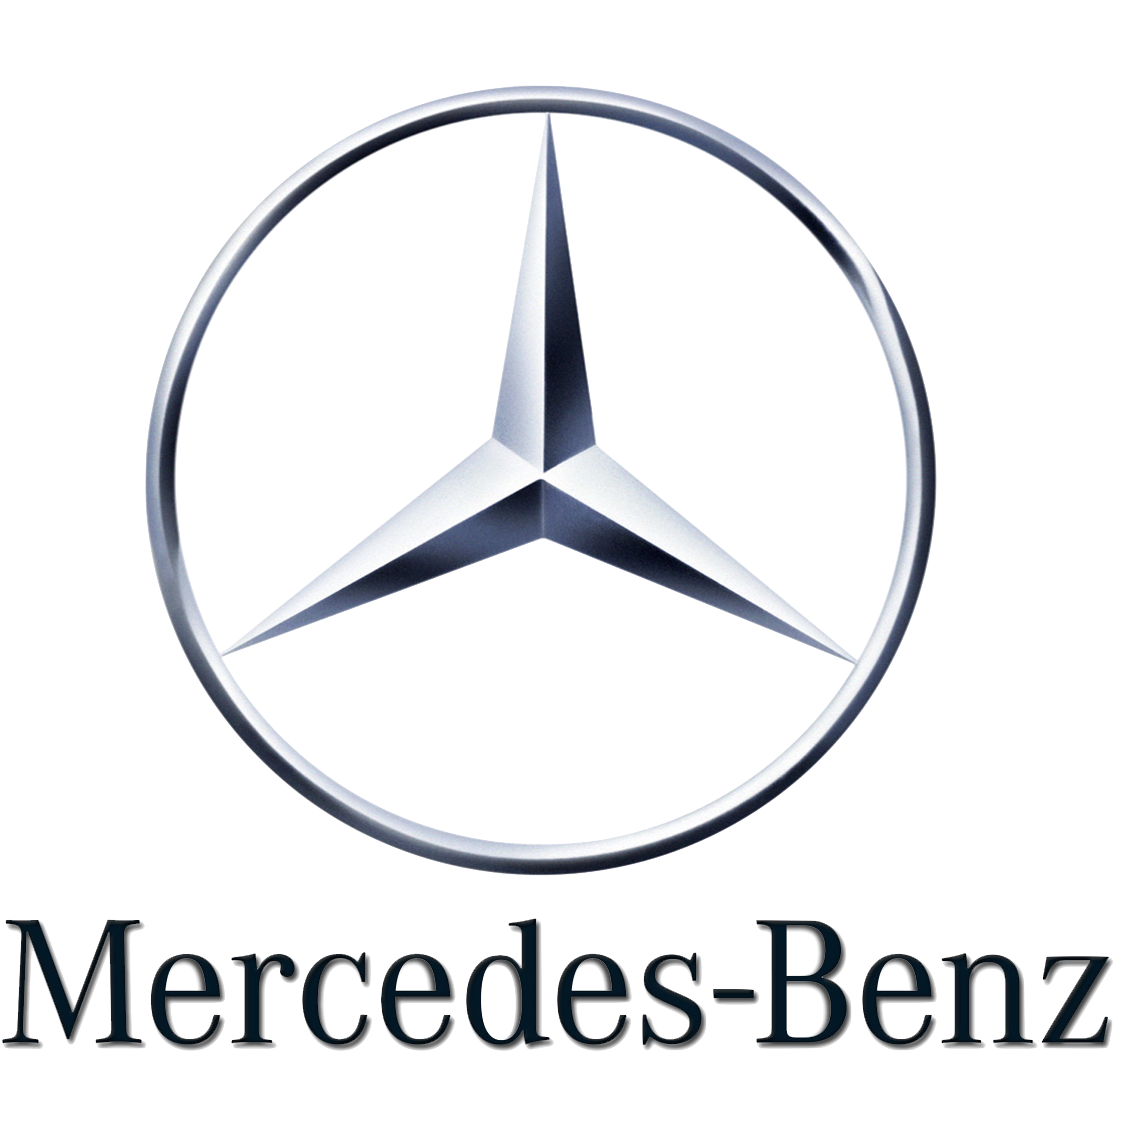 mercedes-logo-world-car-mercedes-benz-class-cdi-1